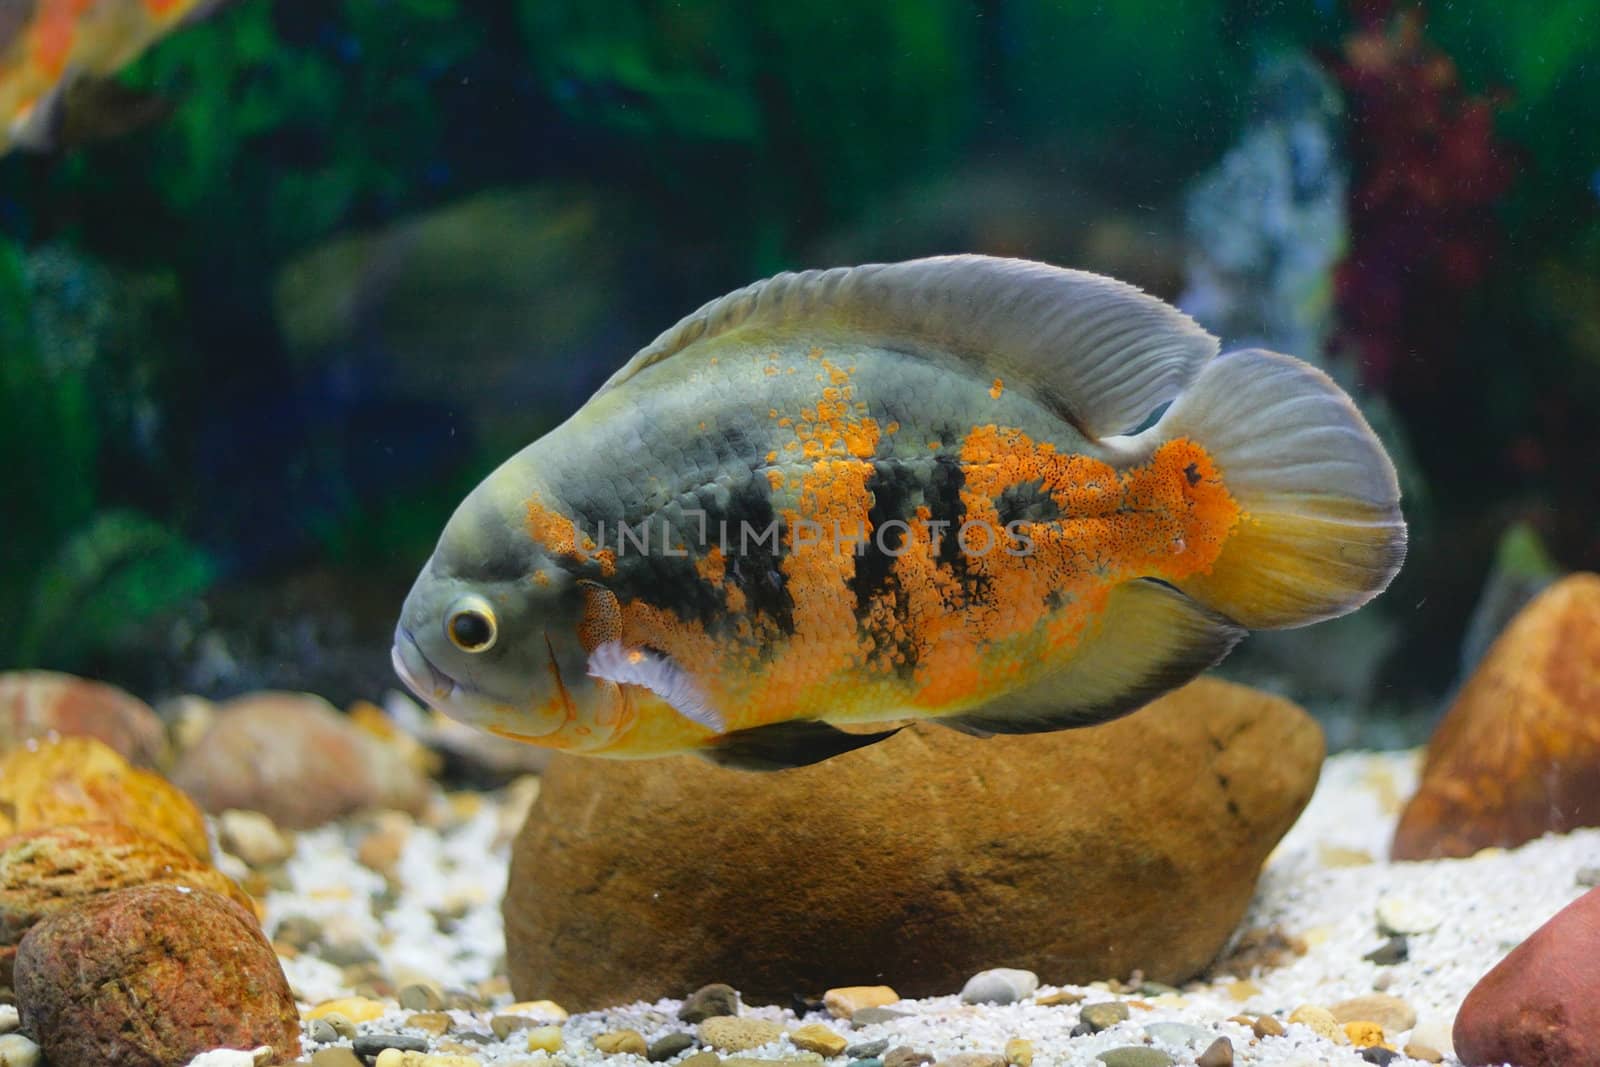 Big tropical fish in aquarium (close-up photo)